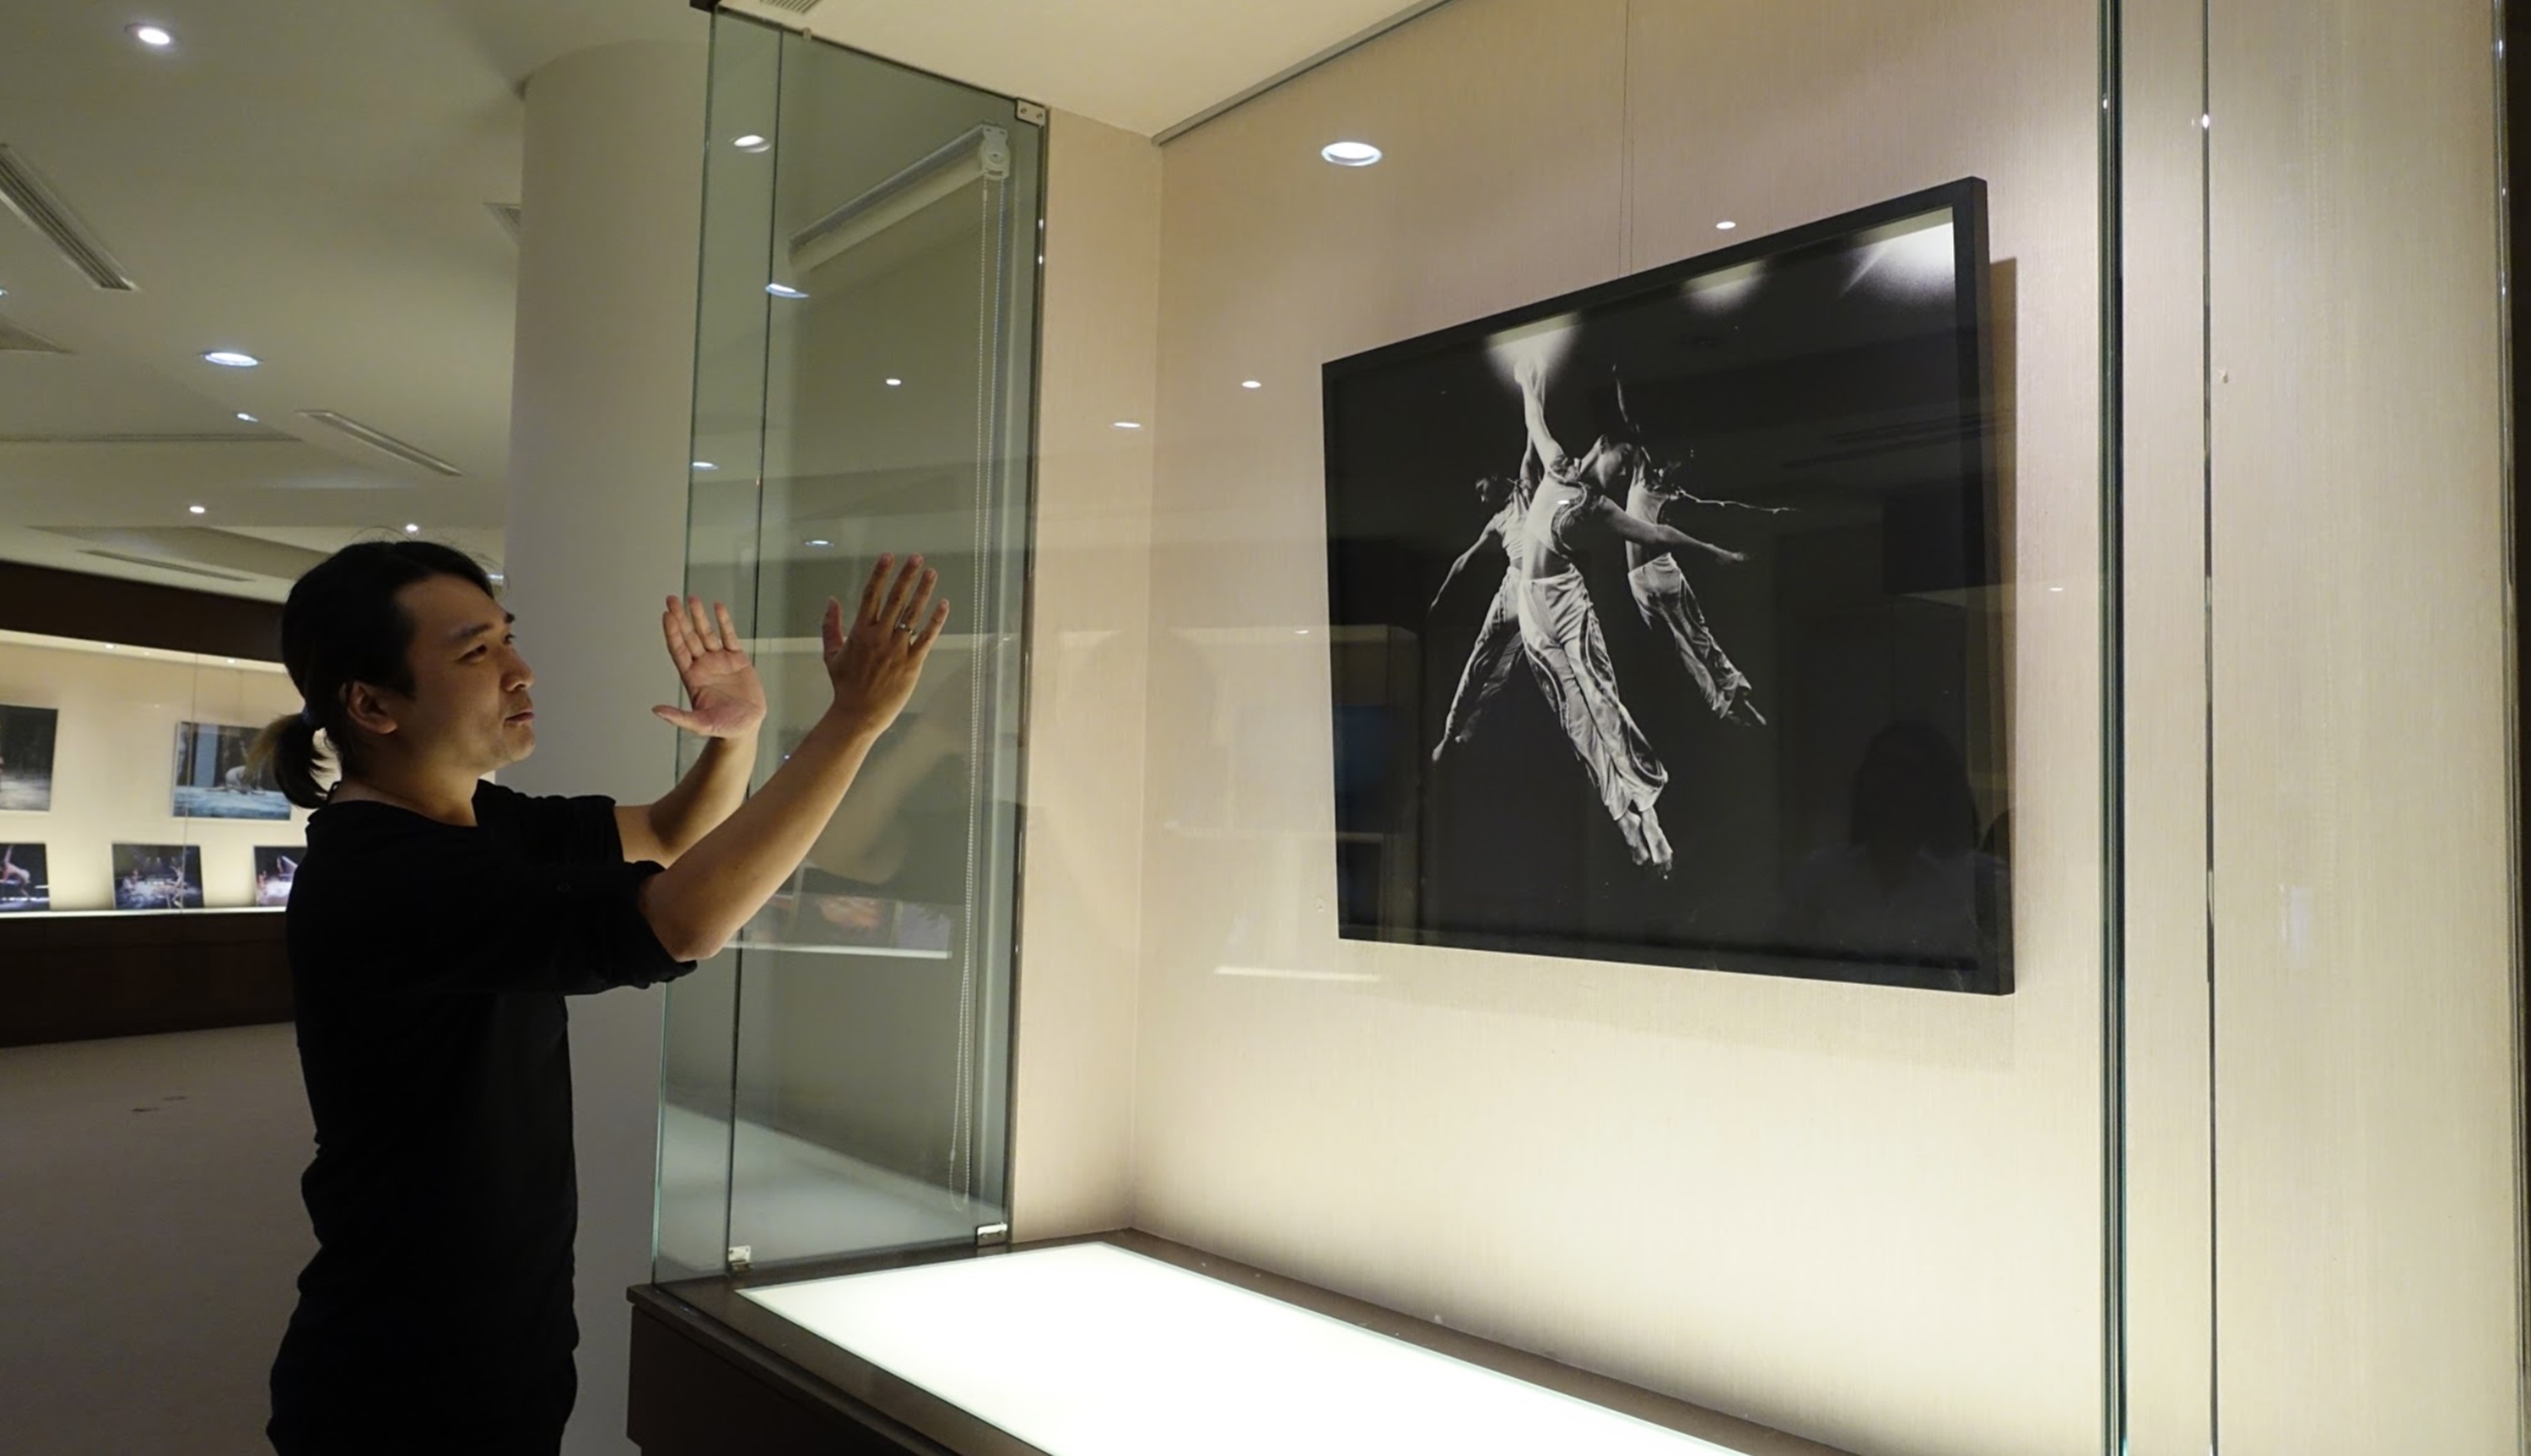 劉人豪劇場影像紀錄展於崑山科大展出 帶領學子體驗「剎那即永恆」-空間設計